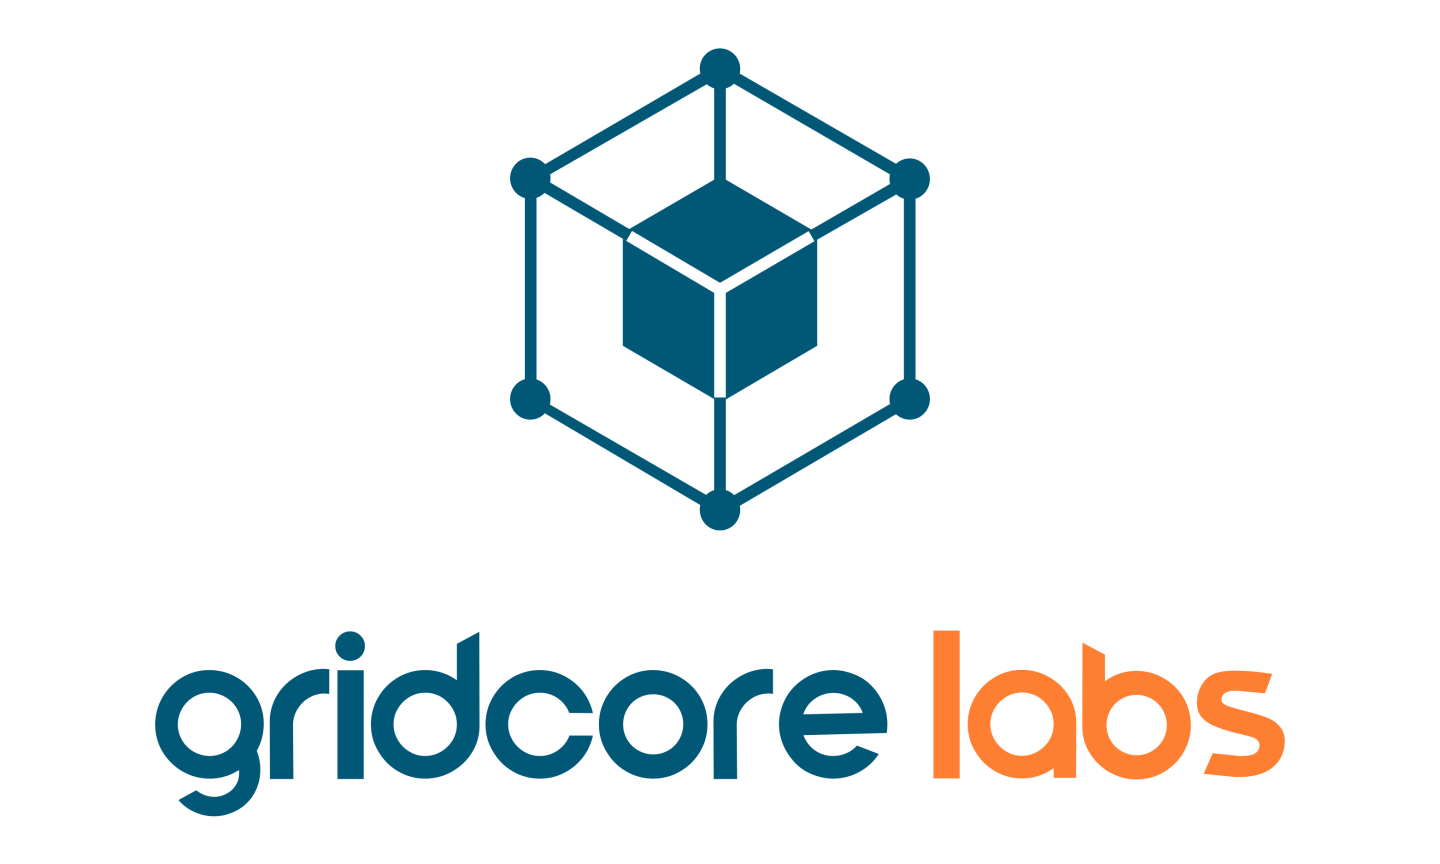 GridCore Labs